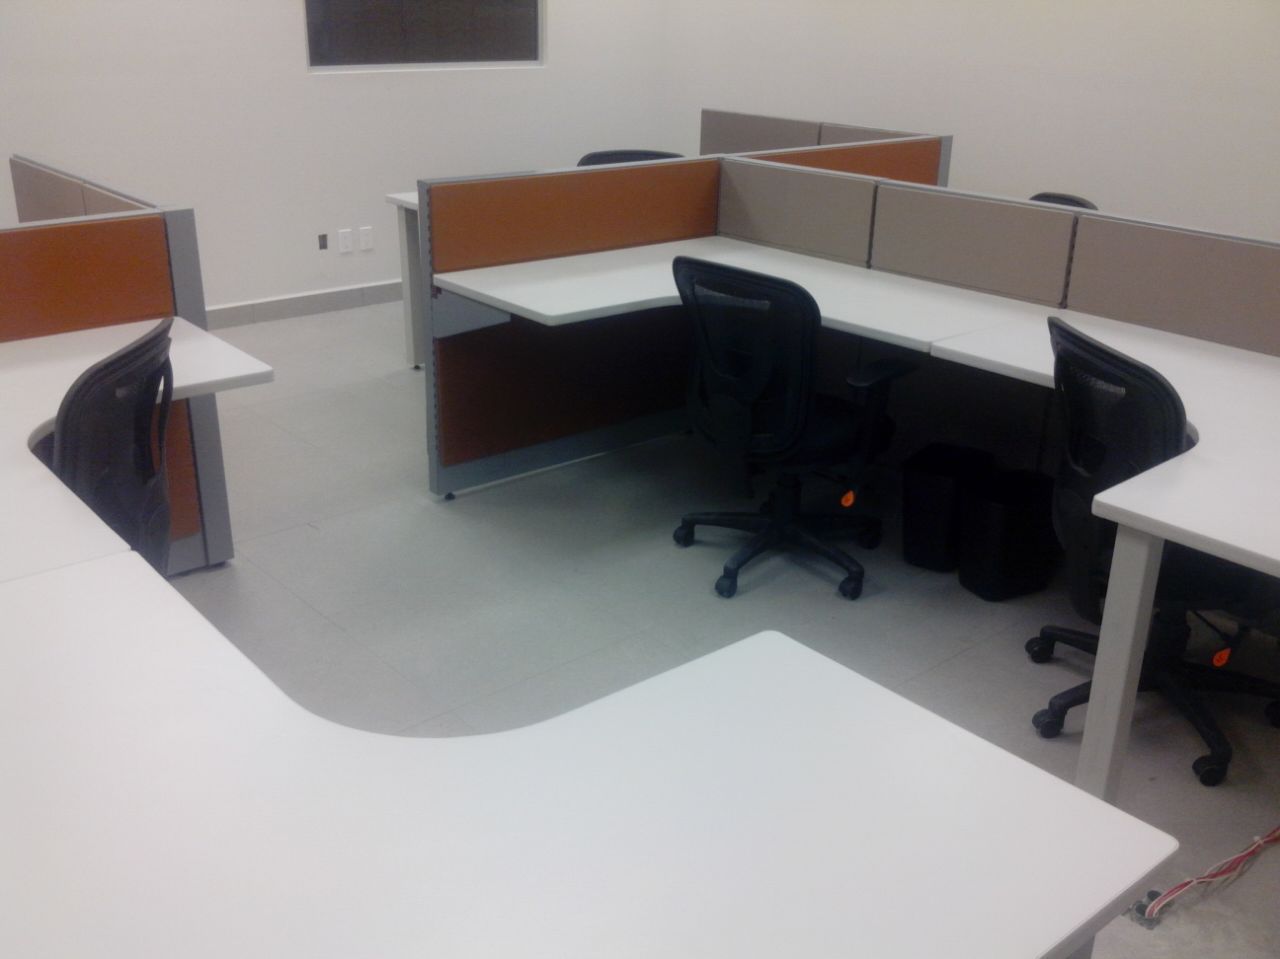 Modulos terminados con escritorio blanco Muebles Modernos para Oficina, S.A. Espacios comerciales Vidrio escritorio,modulo,oficina,trabajo,mampara,Oficinas y tiendas